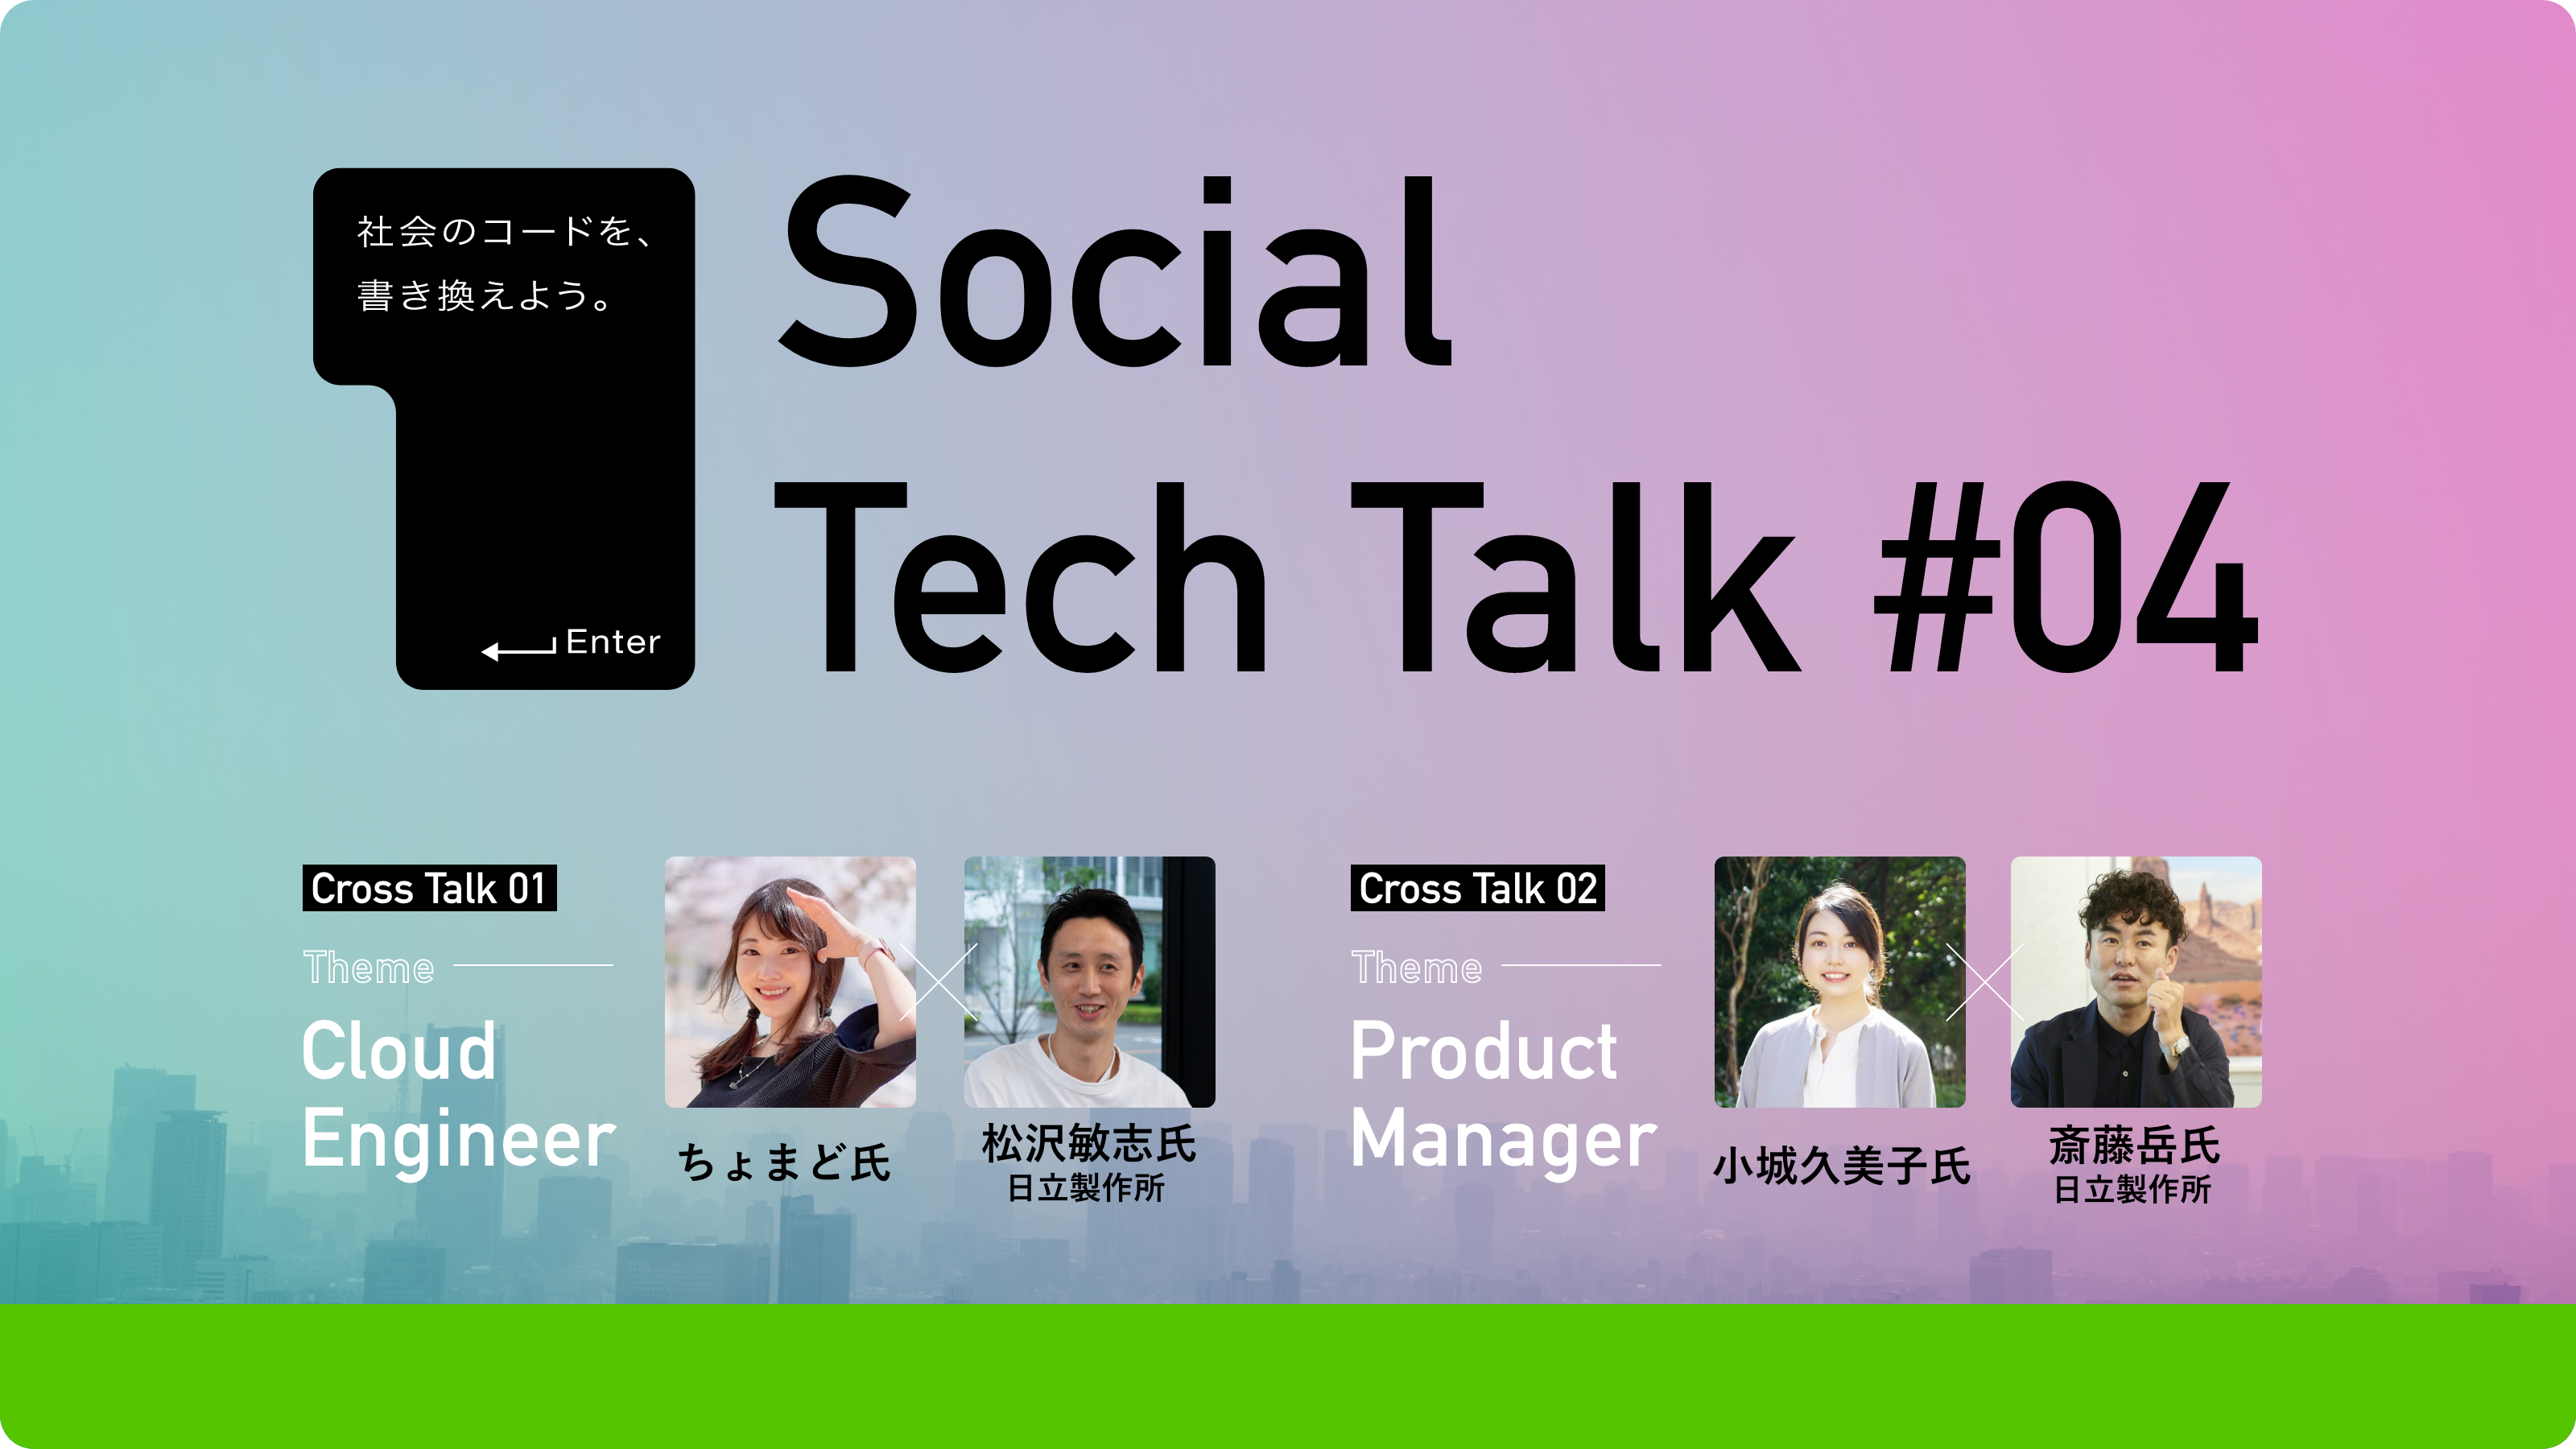 日立製作所と共催で「Social Tech Talk #04」を開催します！ - Qiita Zine